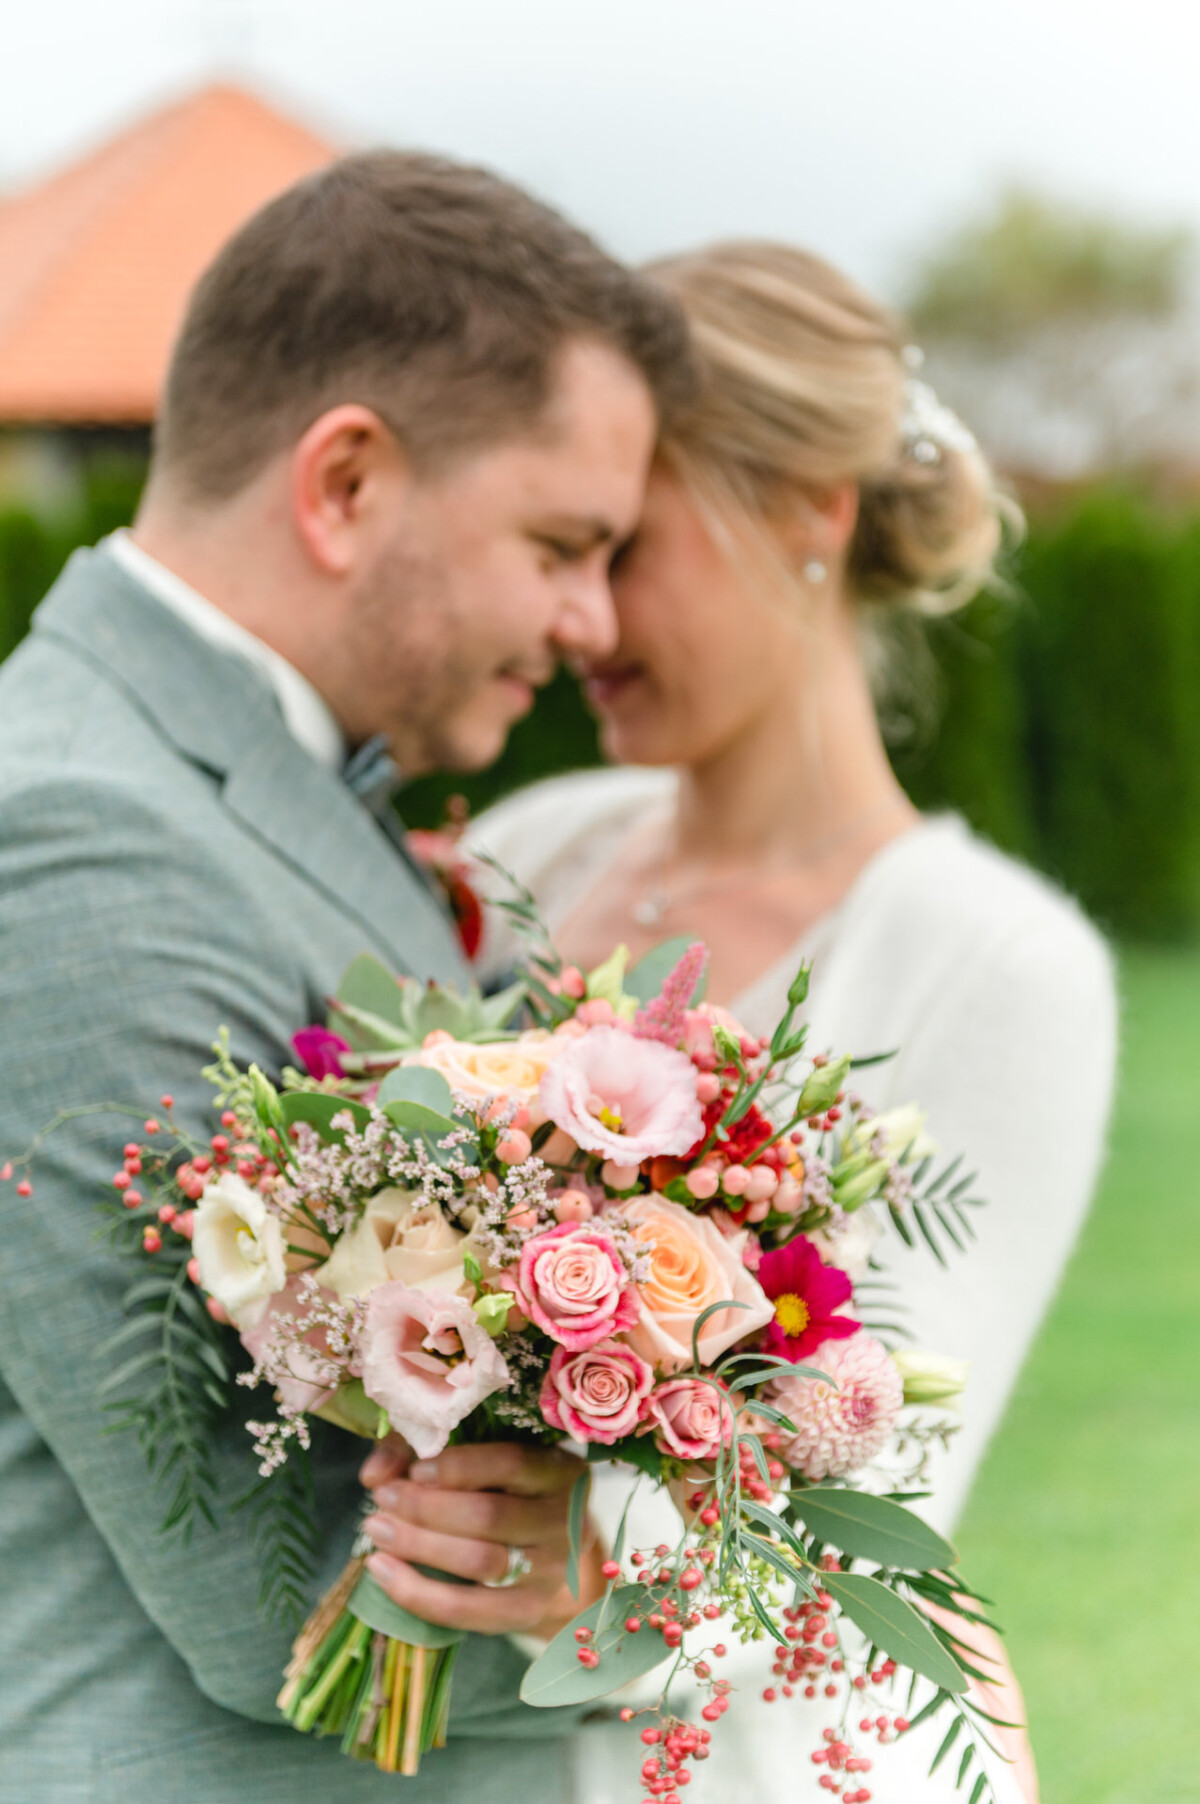 Ein Mann und eine Frau stehen nebeneinander und halten einen Blumenstrauß.